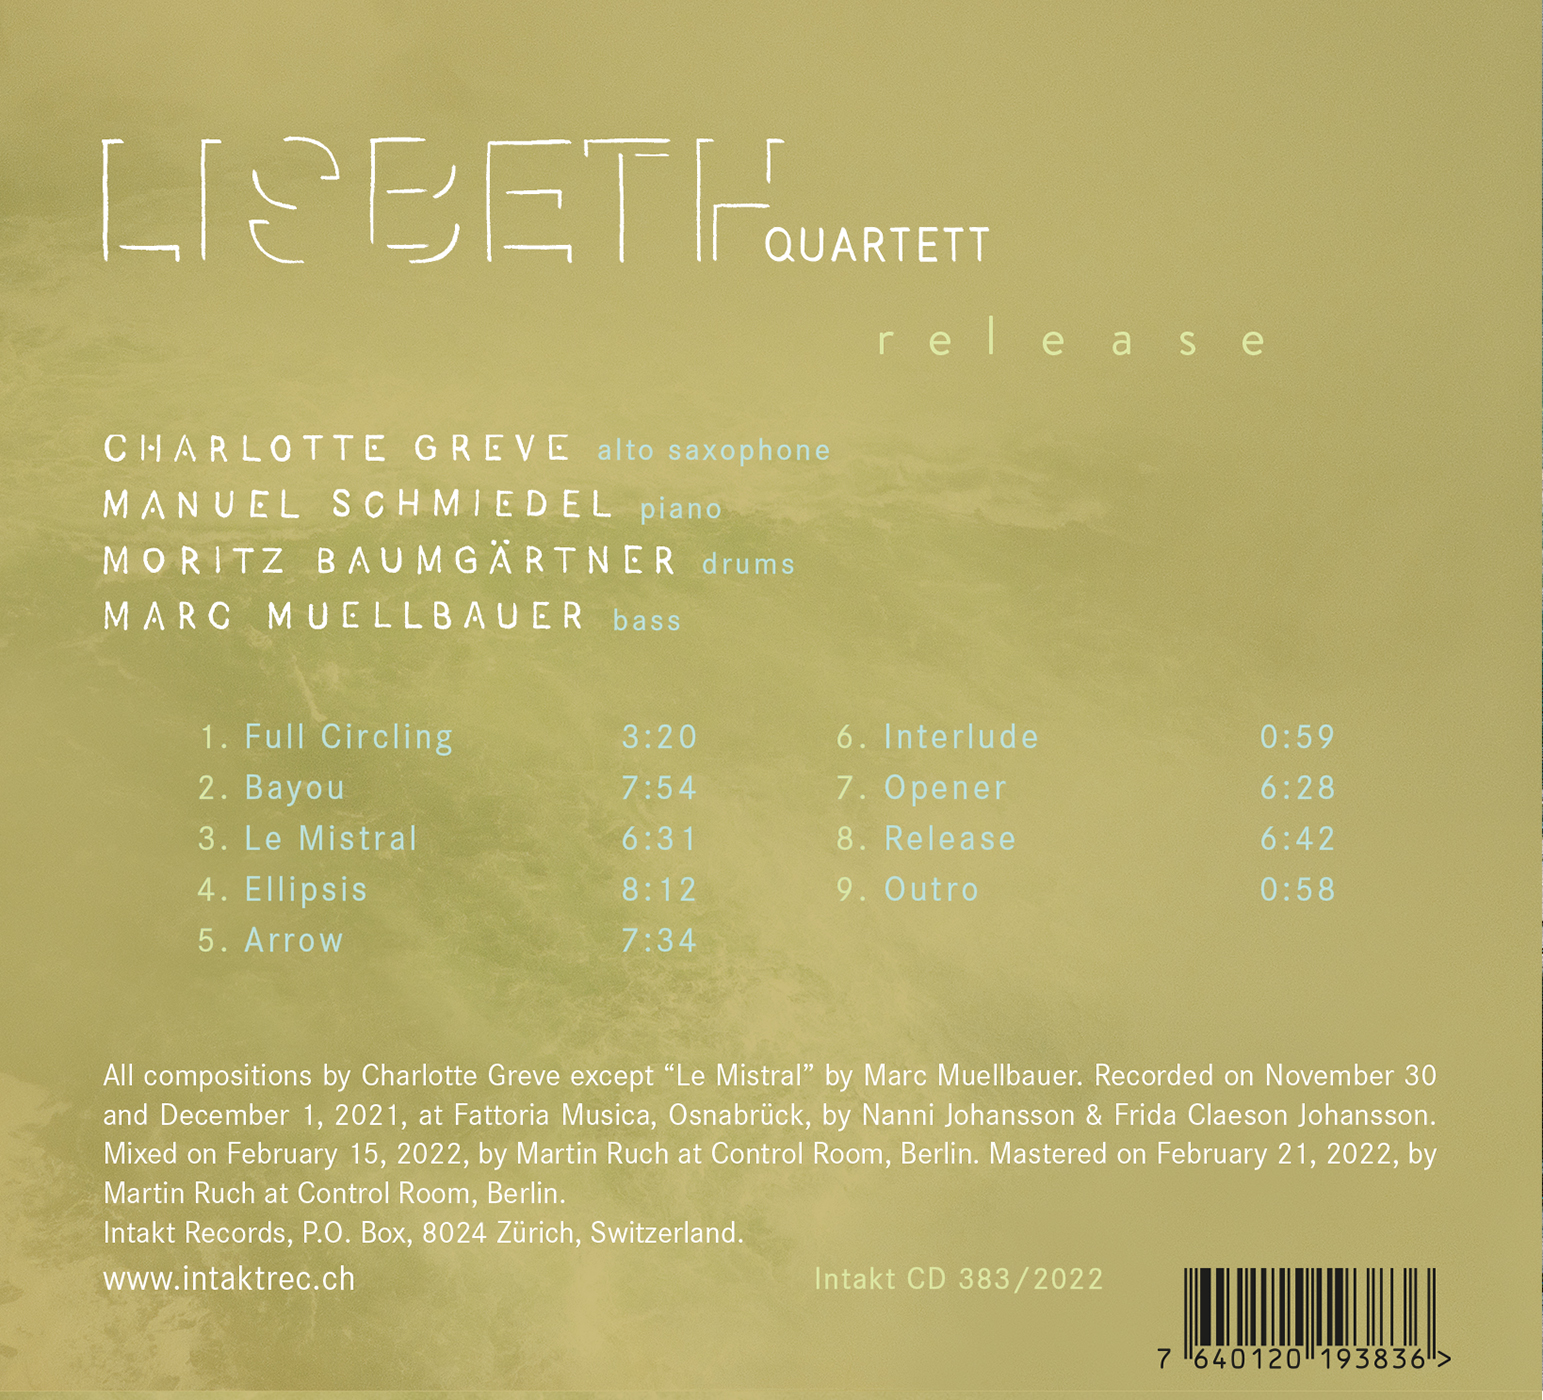 LISBETH QUARTETT back cover release